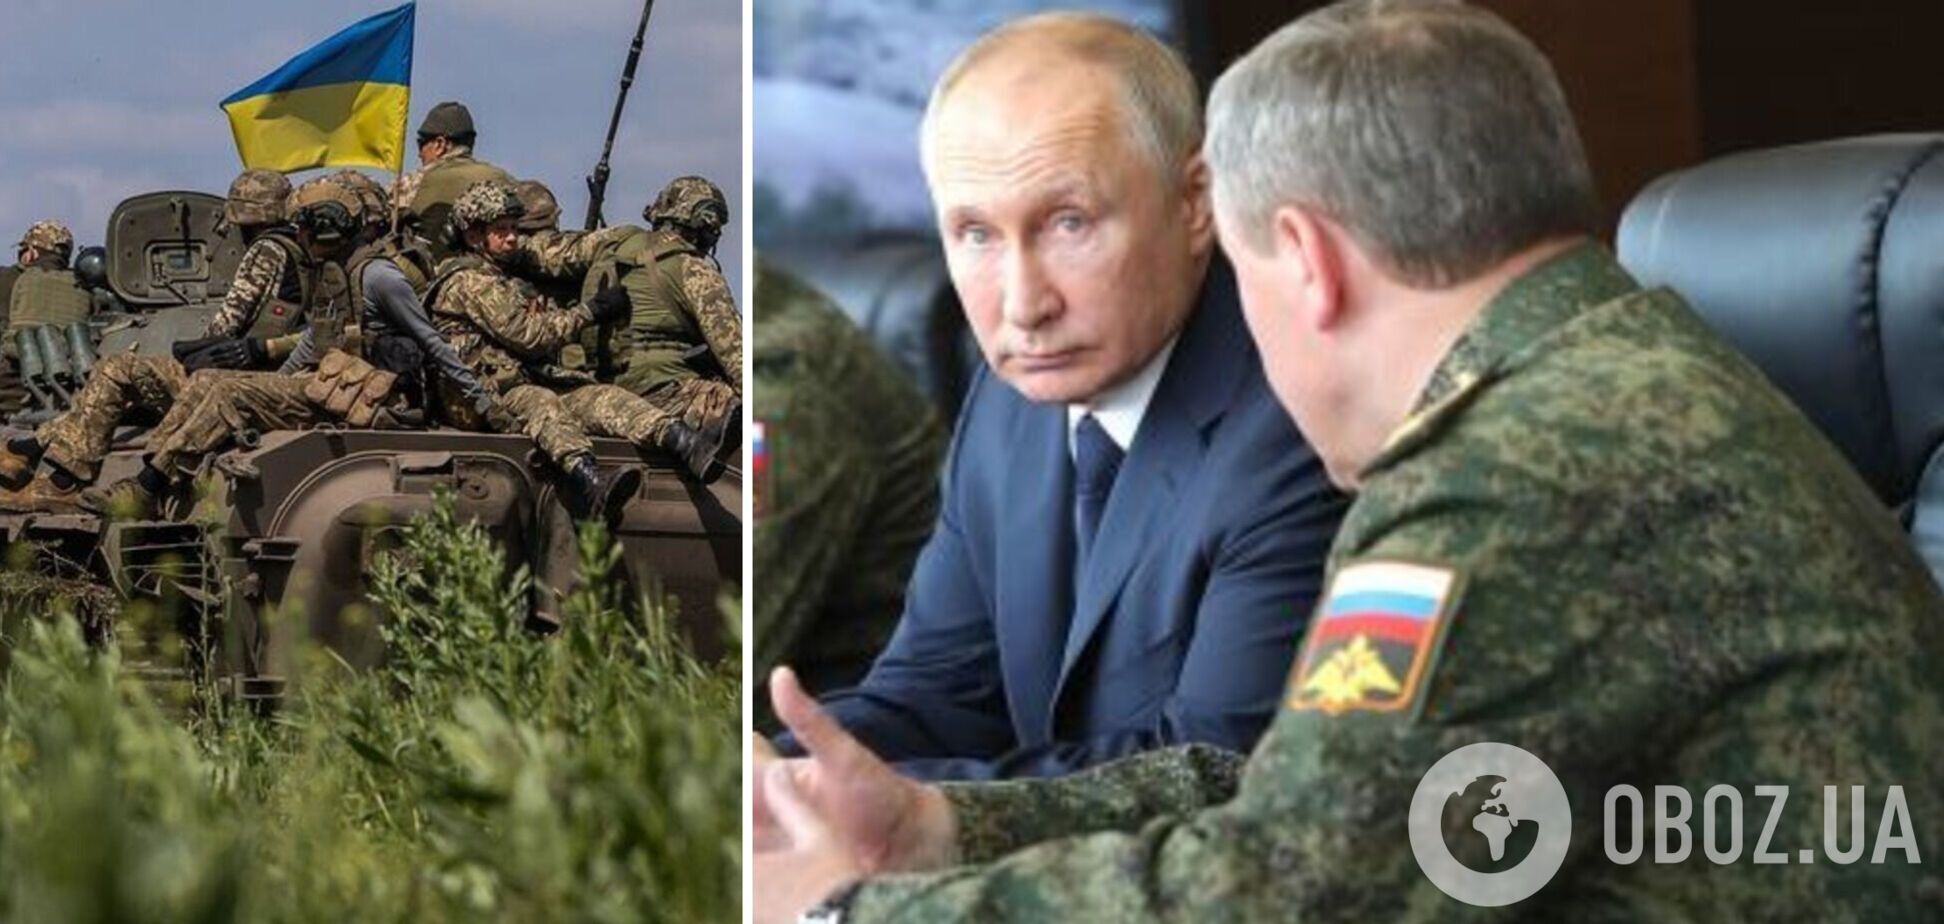 Путин собирает элитные полки из 'чего-нибудь': Селезнев назвал амбициозную цель врага